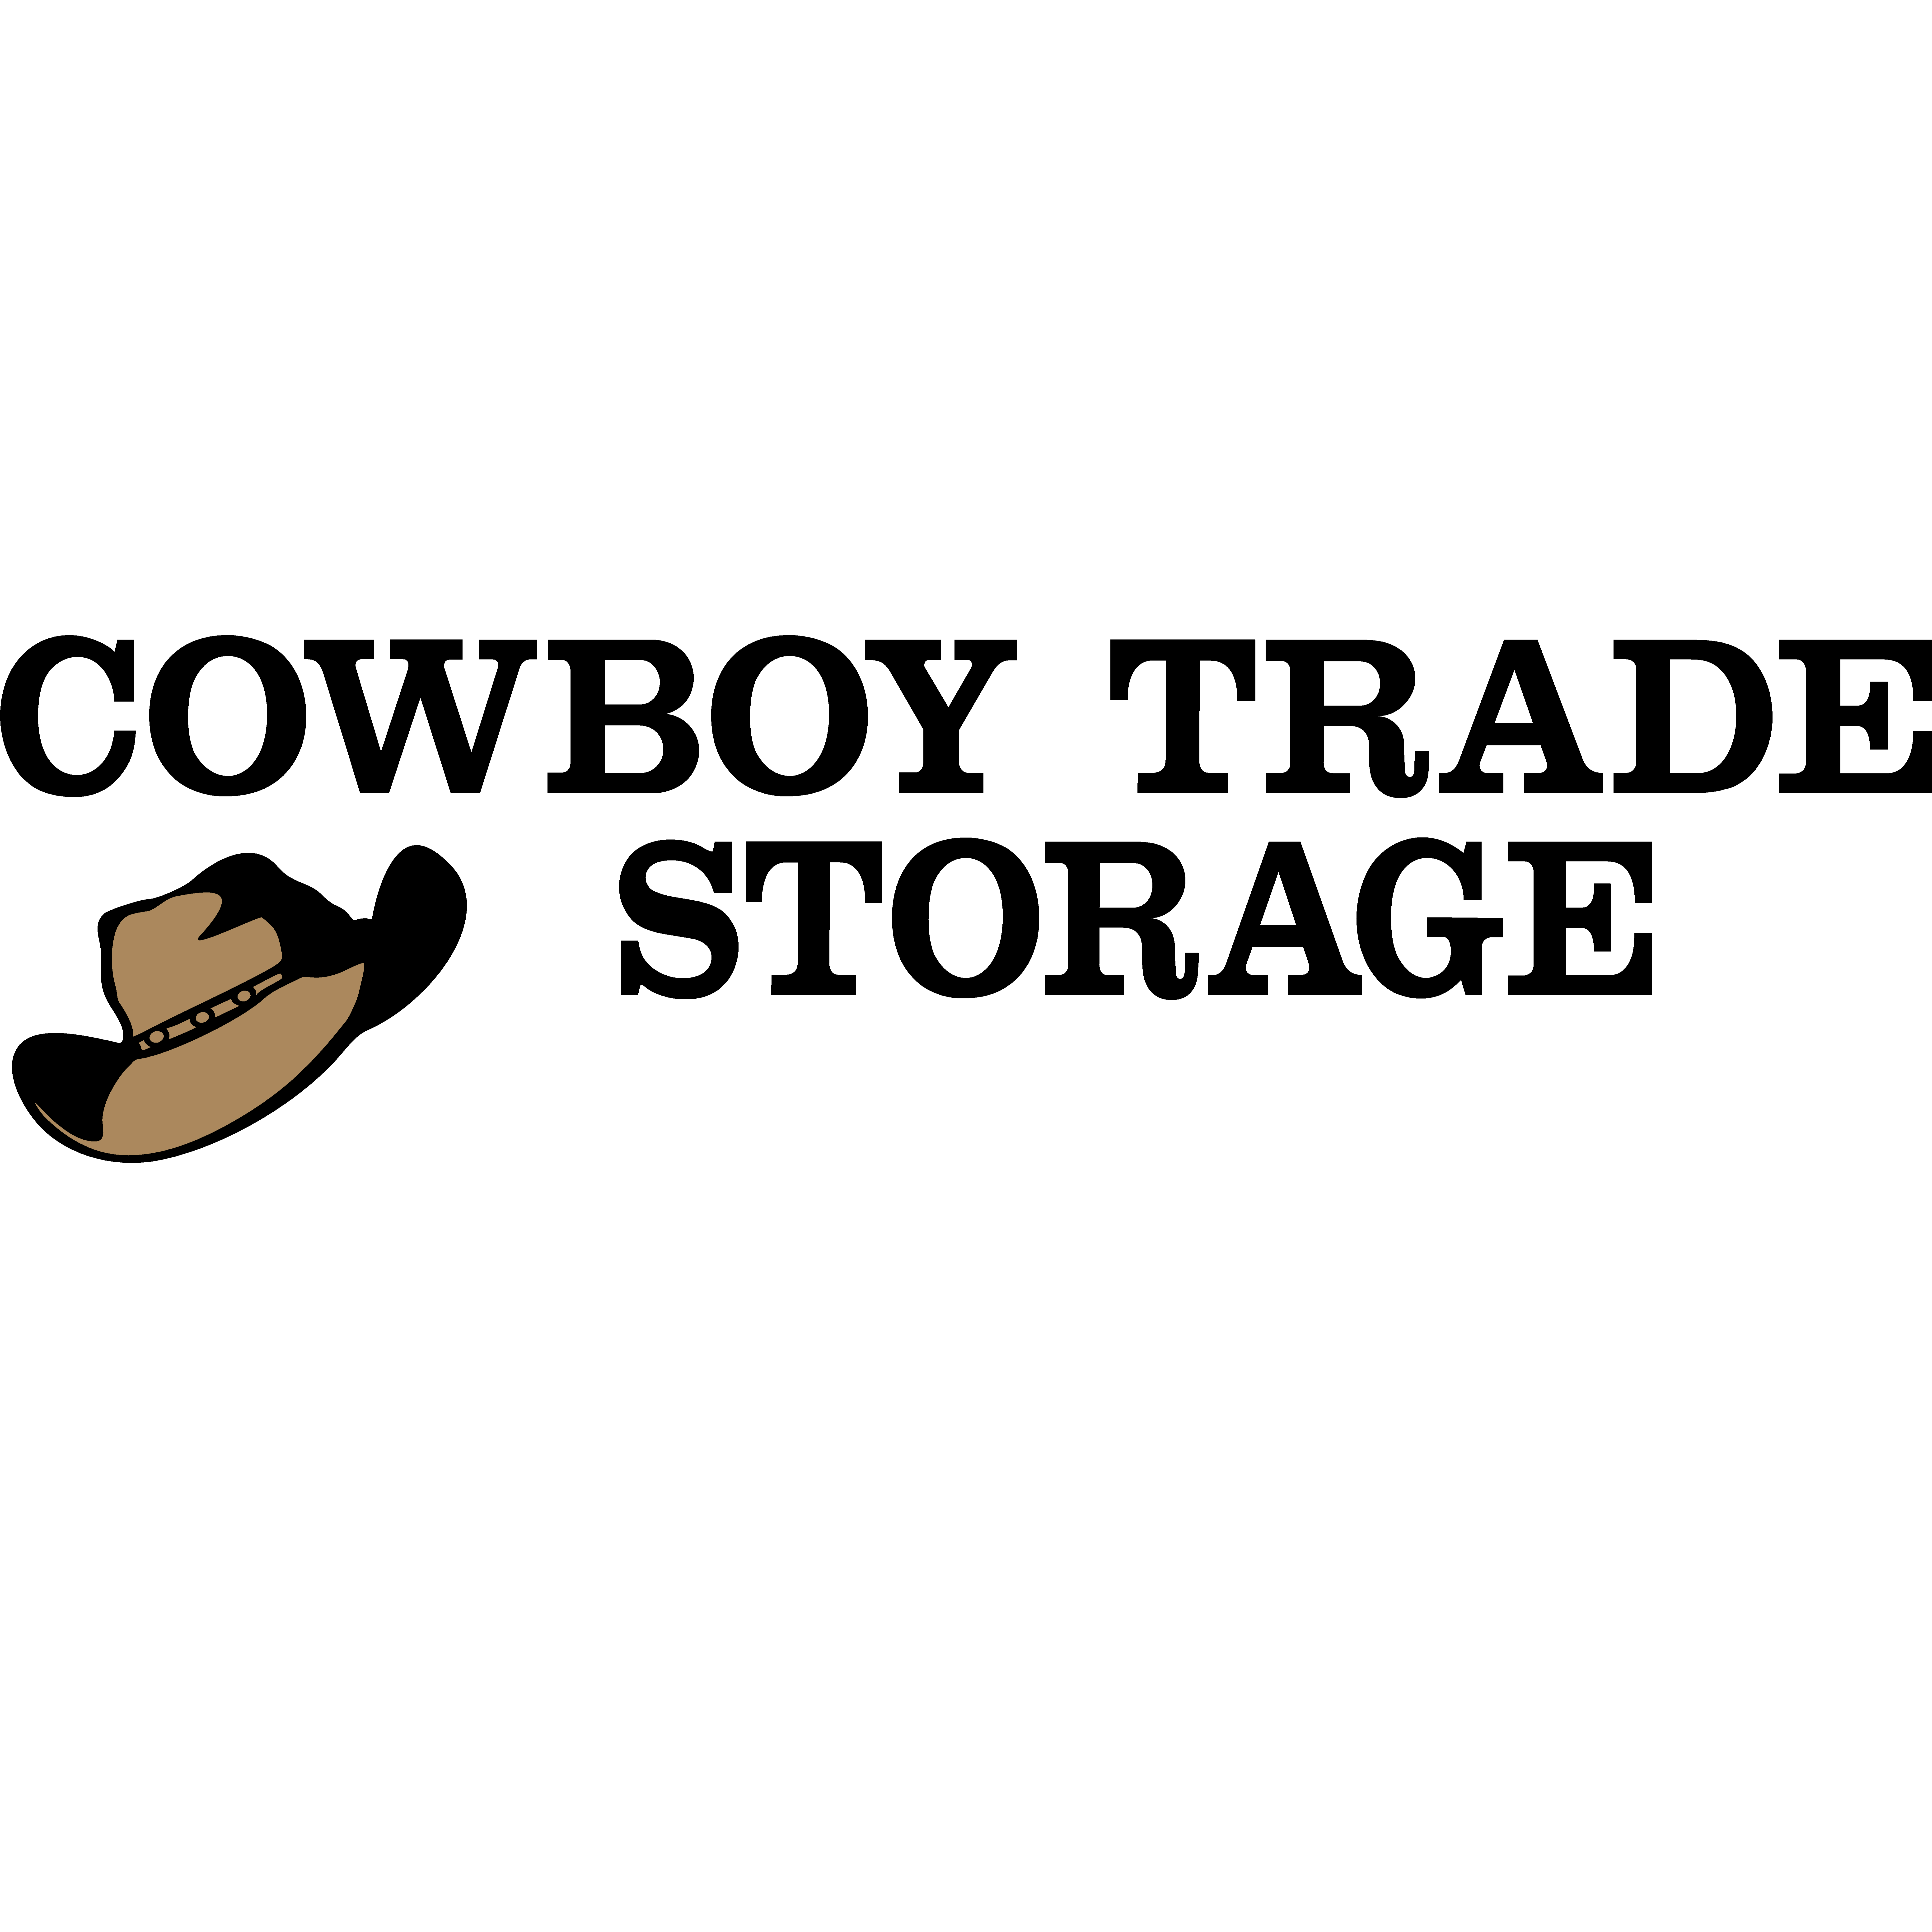 Cowboy Trade Storage - Cortez, CO 81321 - (970)759-8855 | ShowMeLocal.com